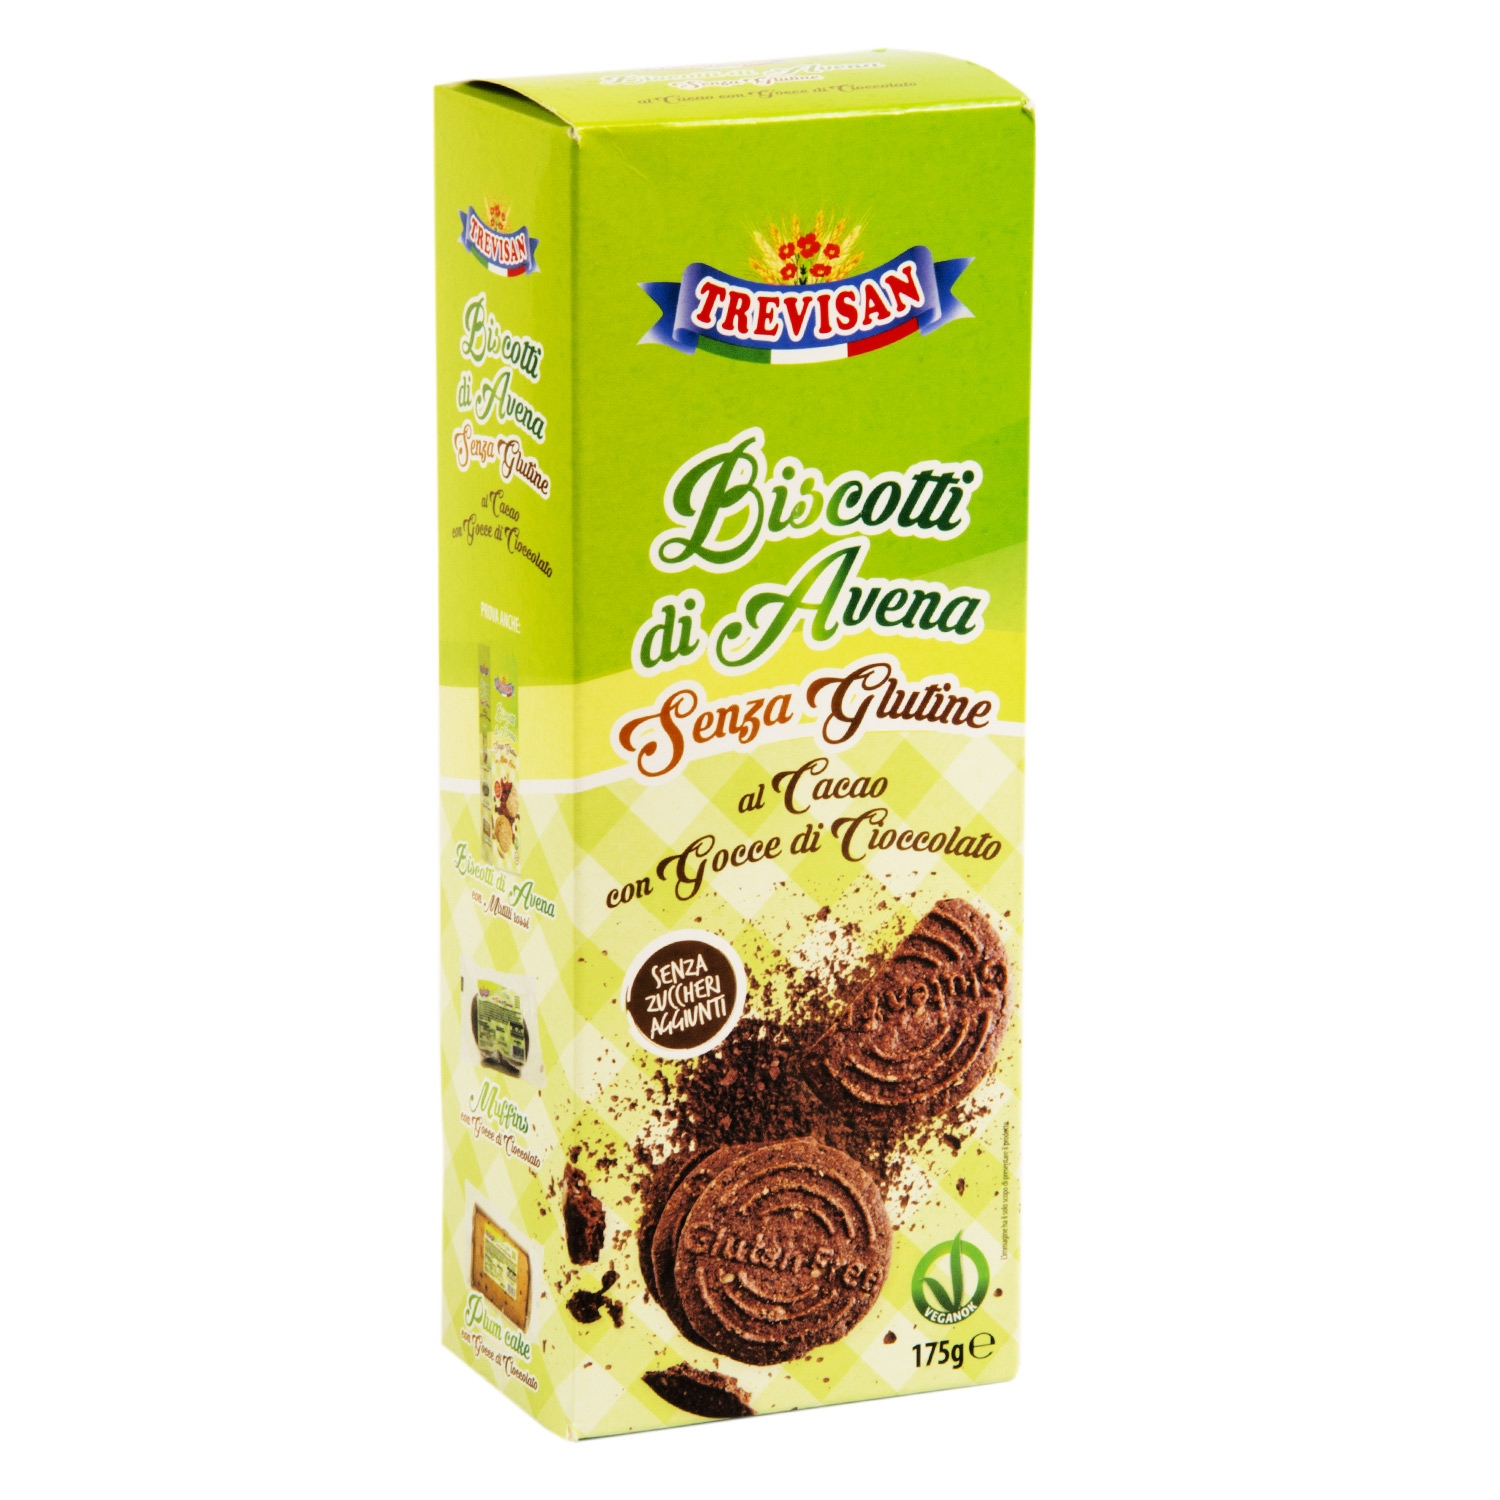 Biscotti di avena s/glutine al cacao NO BIO - Trevisan Shop